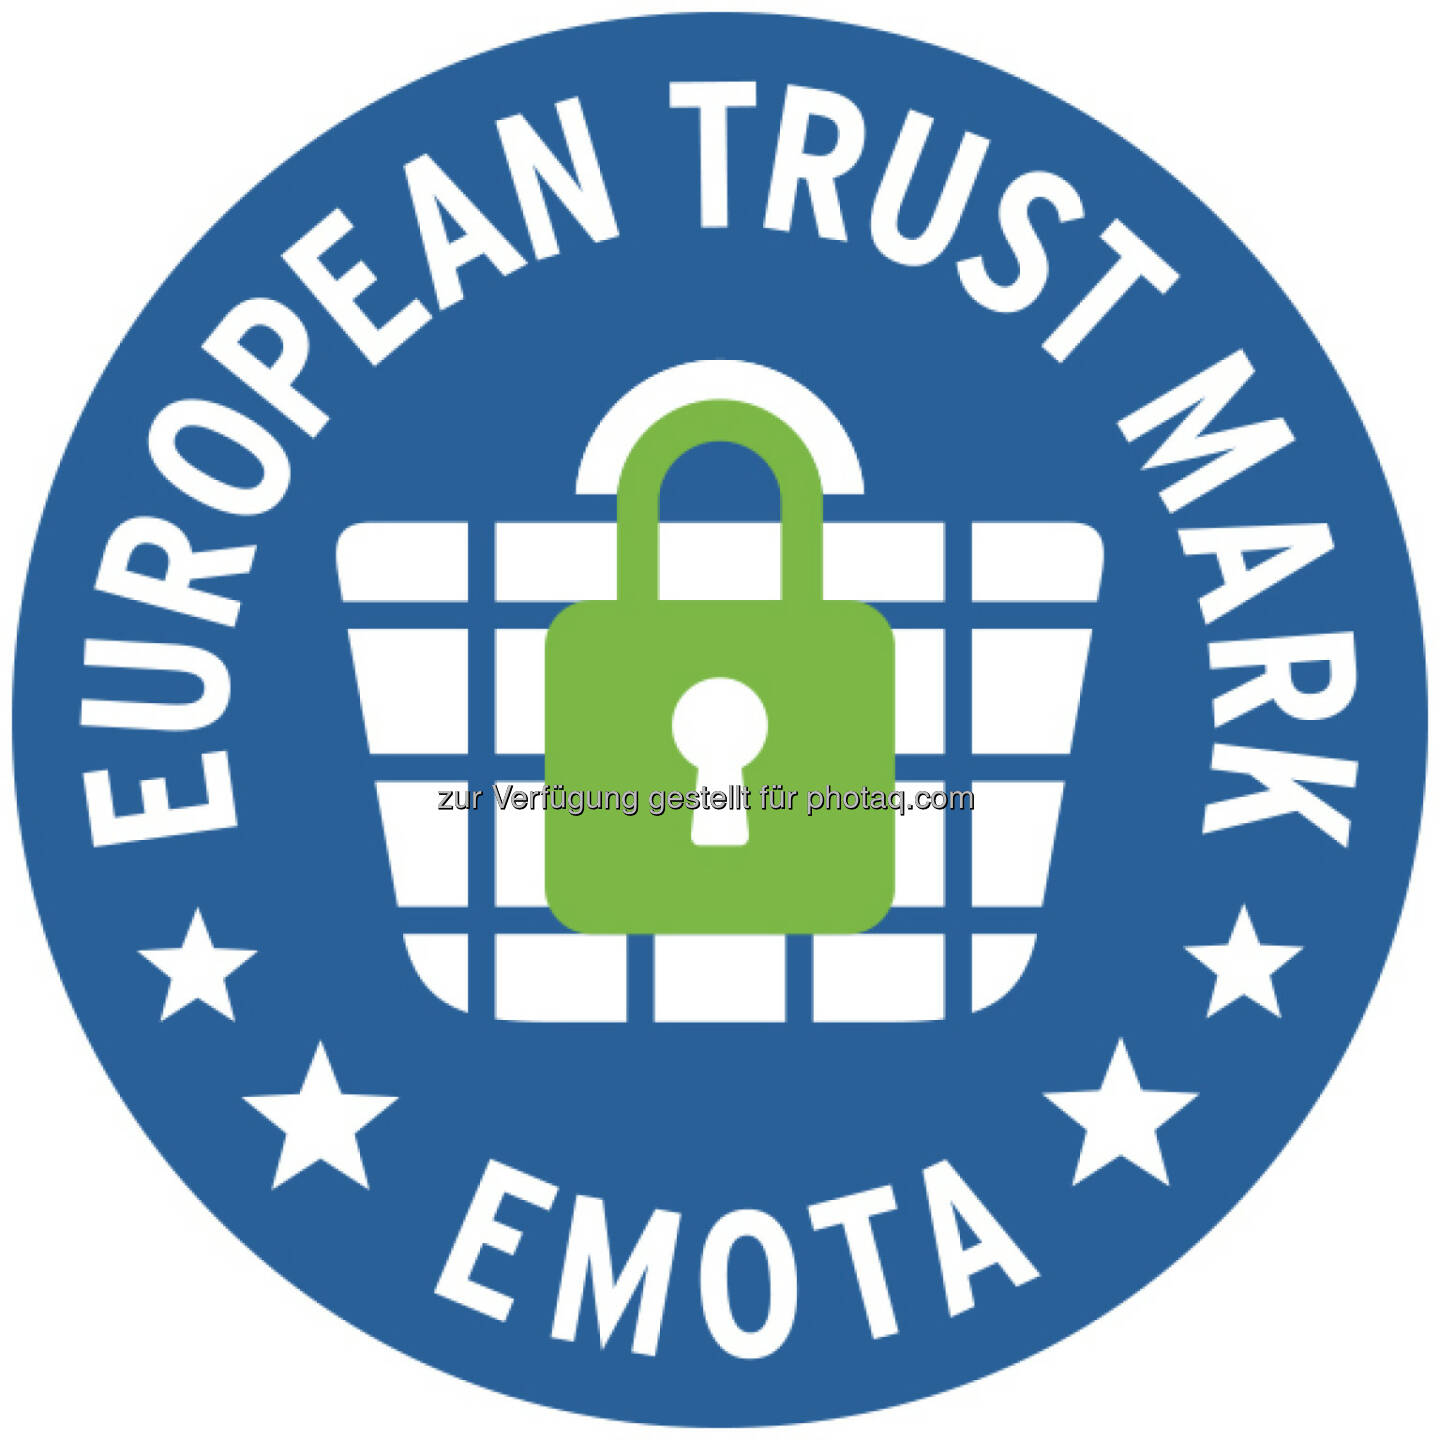 European Trust Mark-Logo : Das Österreichische E-Commerce-Gütezeichen erfüllt durch seine strengen Kriterien den Europa-Standard des European Trustmark : Online-Shops, die die Gütezeichen-Zertifizierung erfolgreich abgeschlossen haben, sind automatisch berechtigt, das European Trustmark zu tragen : Fotocredit: European Trust Mark